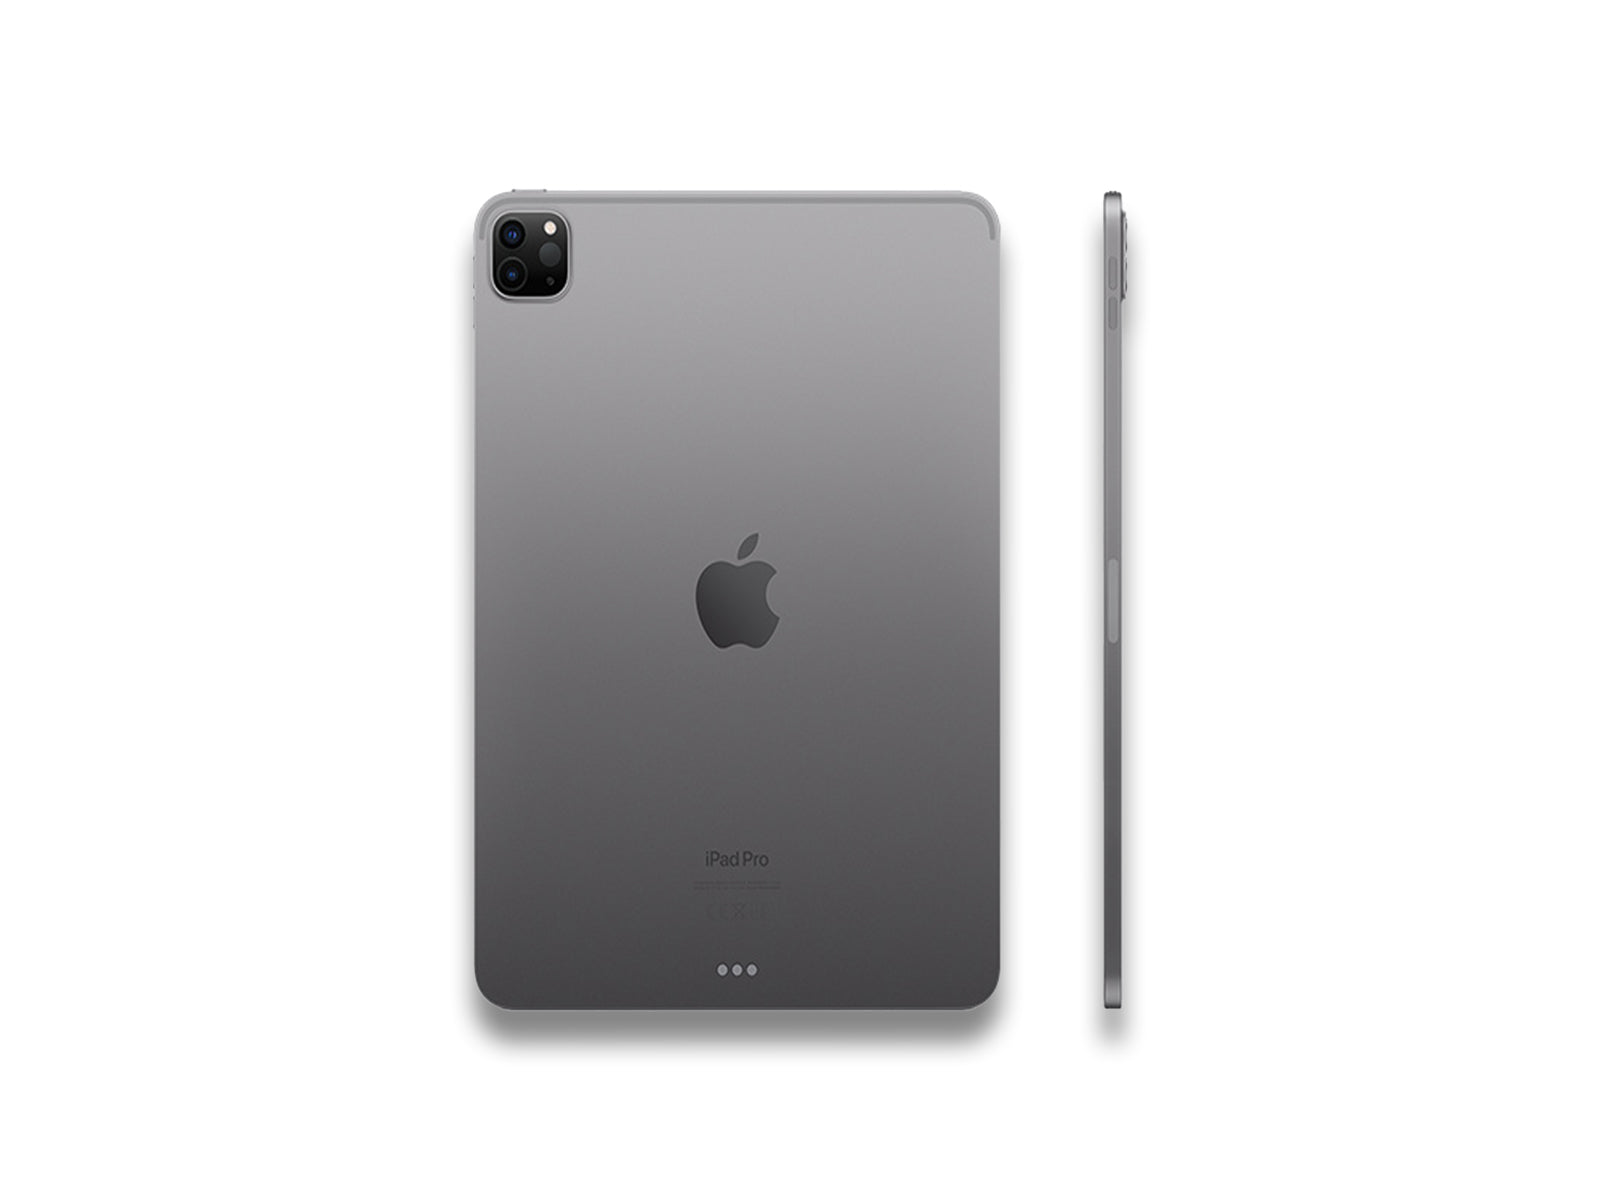 iPad Pro 4th Gen In Space Grey Back Side